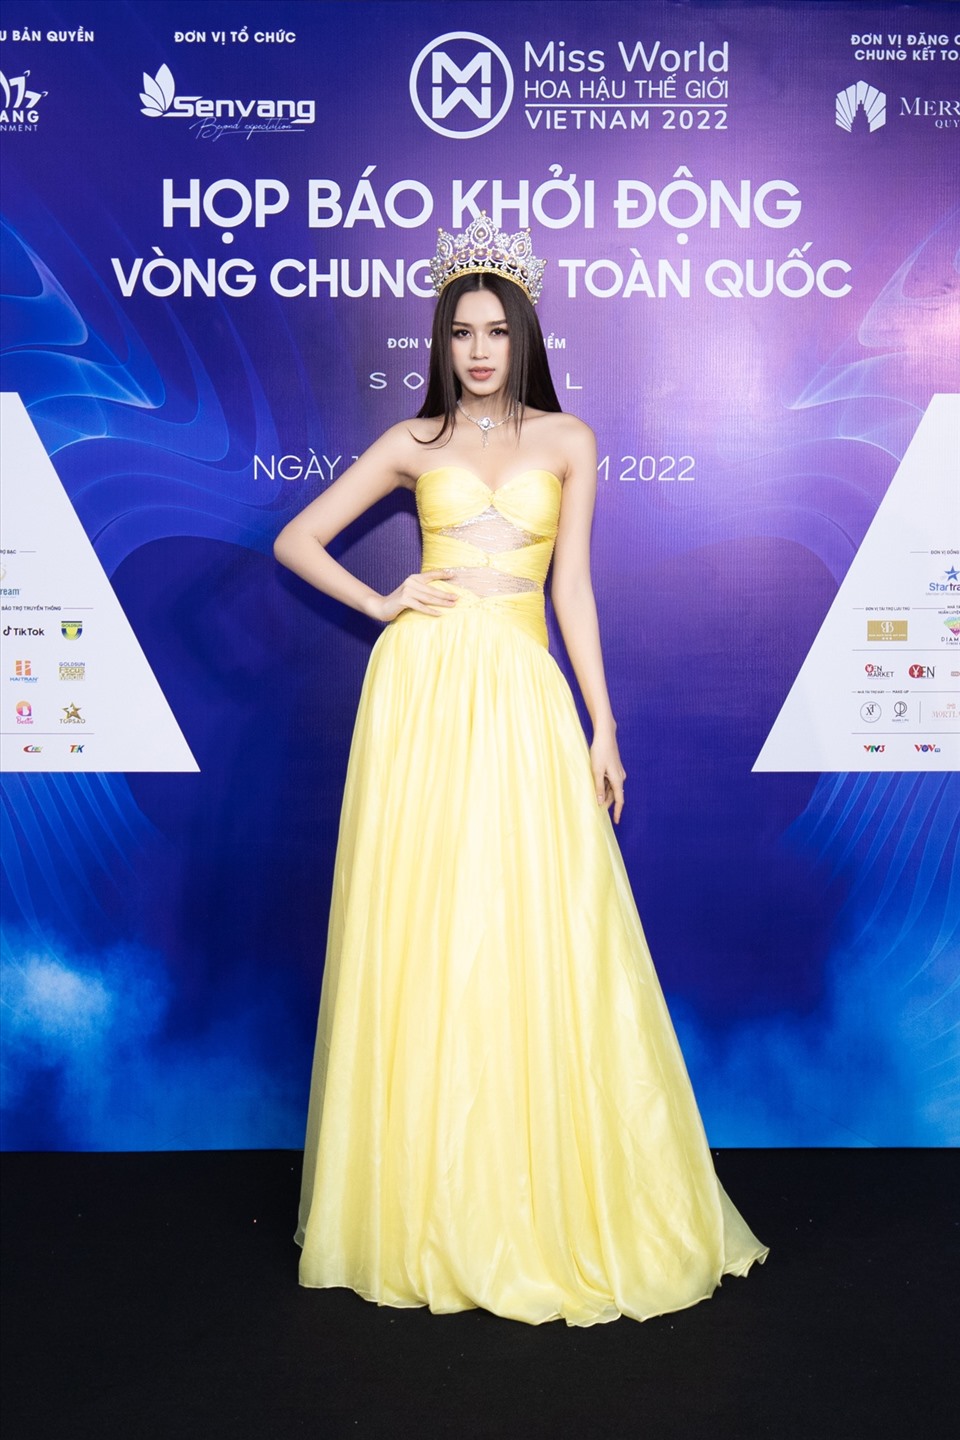 Xuất hiện tại buổi họp báo, Hoa hậu Việt Nam 2020 Đỗ Thị Hà diện chiếc đầm mang tone vàng rực rỡ cùng điểm nhấn cut-out độc đáo. Ảnh: Sen Vàng.